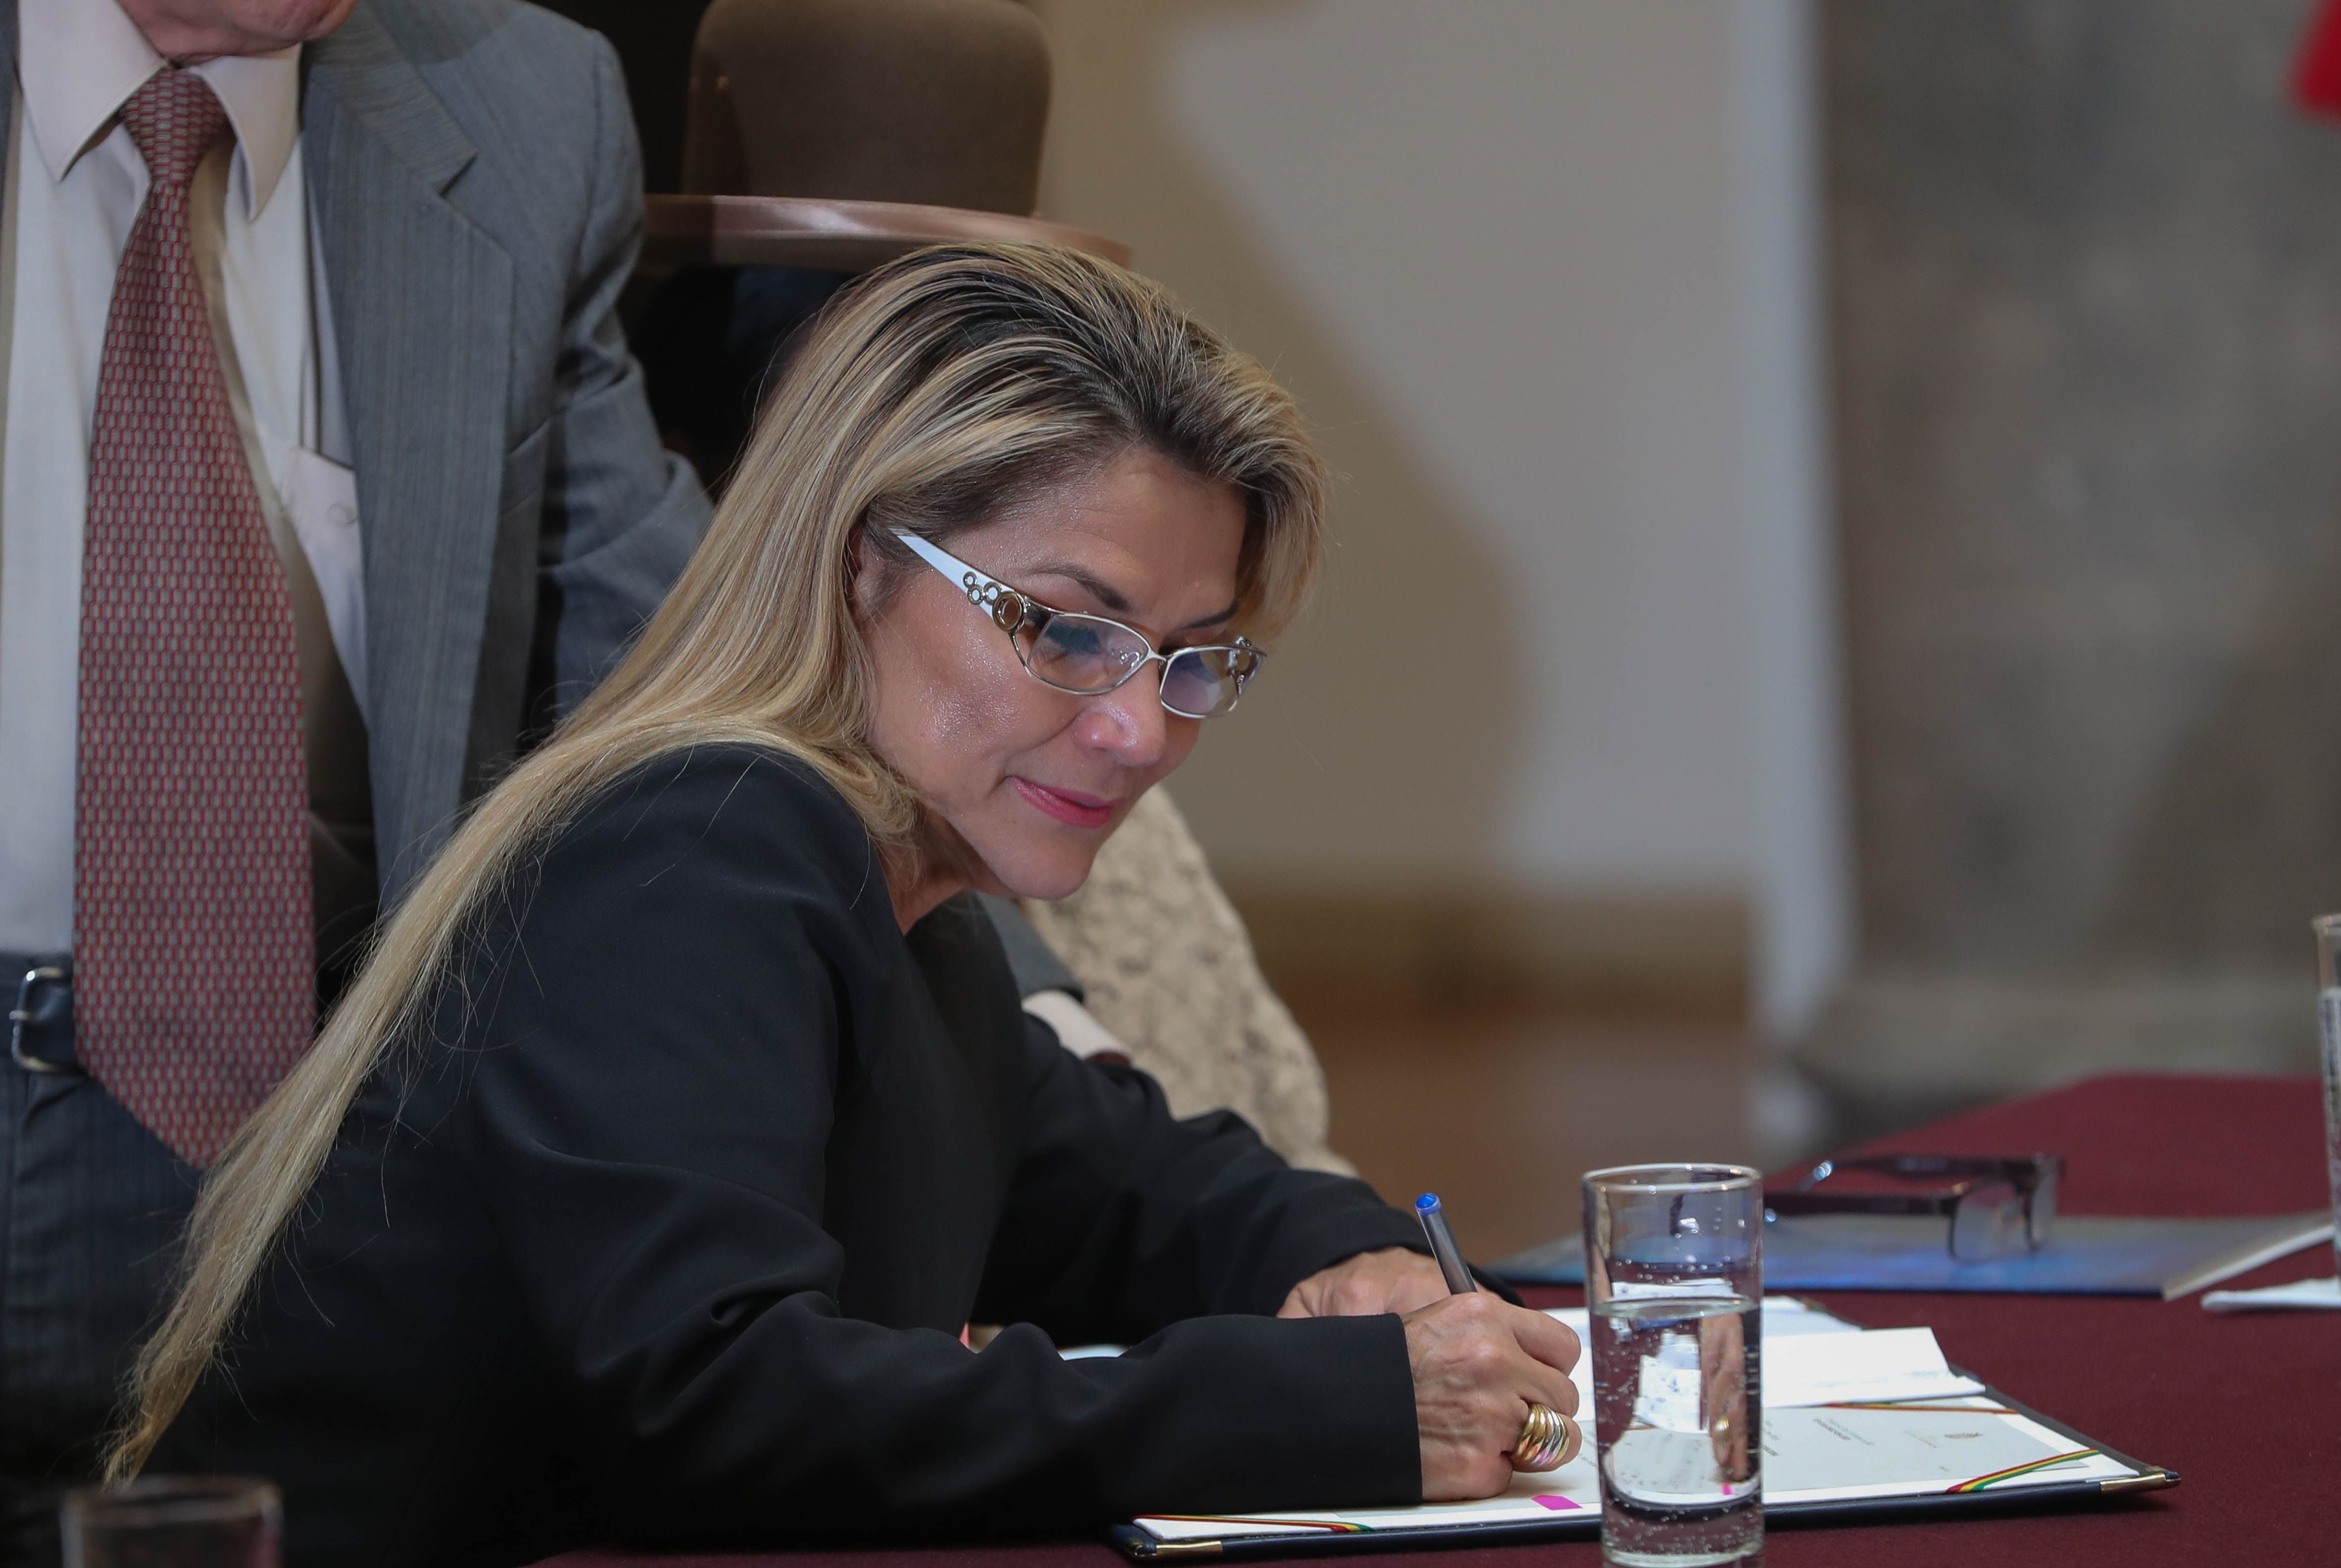 La expresidenta boliviana Jeanine Áñez denuncia en una carta que ha sido víctima de “torturas y abusos” desde su detención